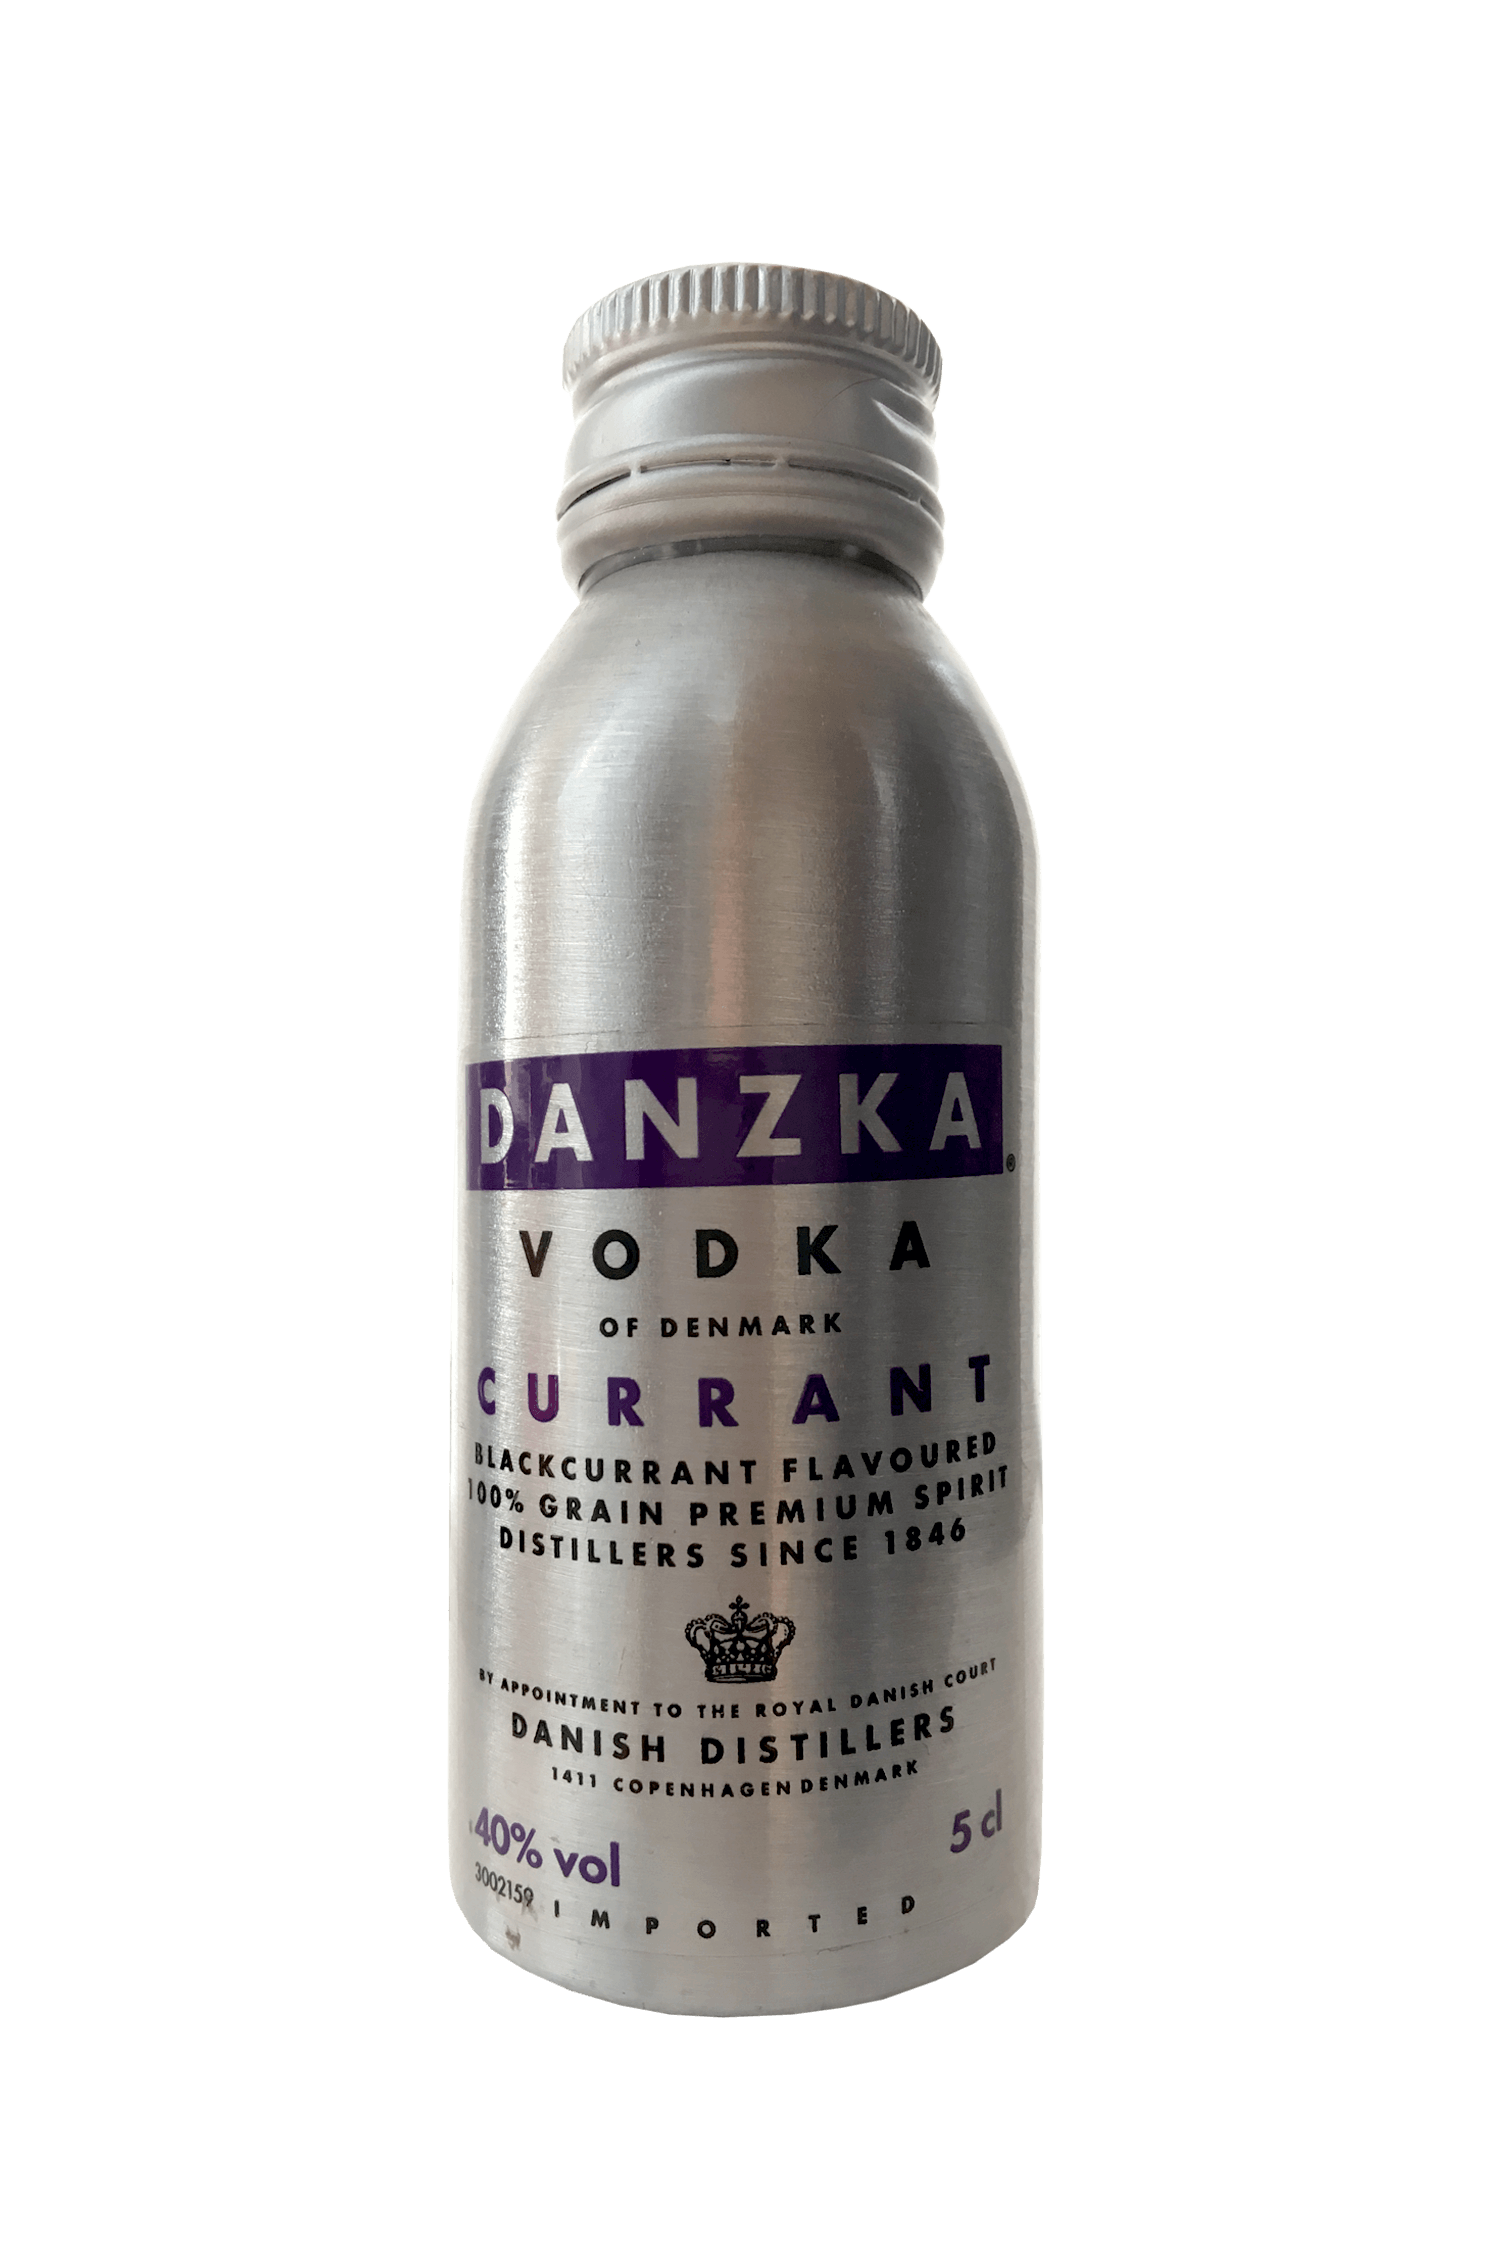 Danzka Vodka Currant